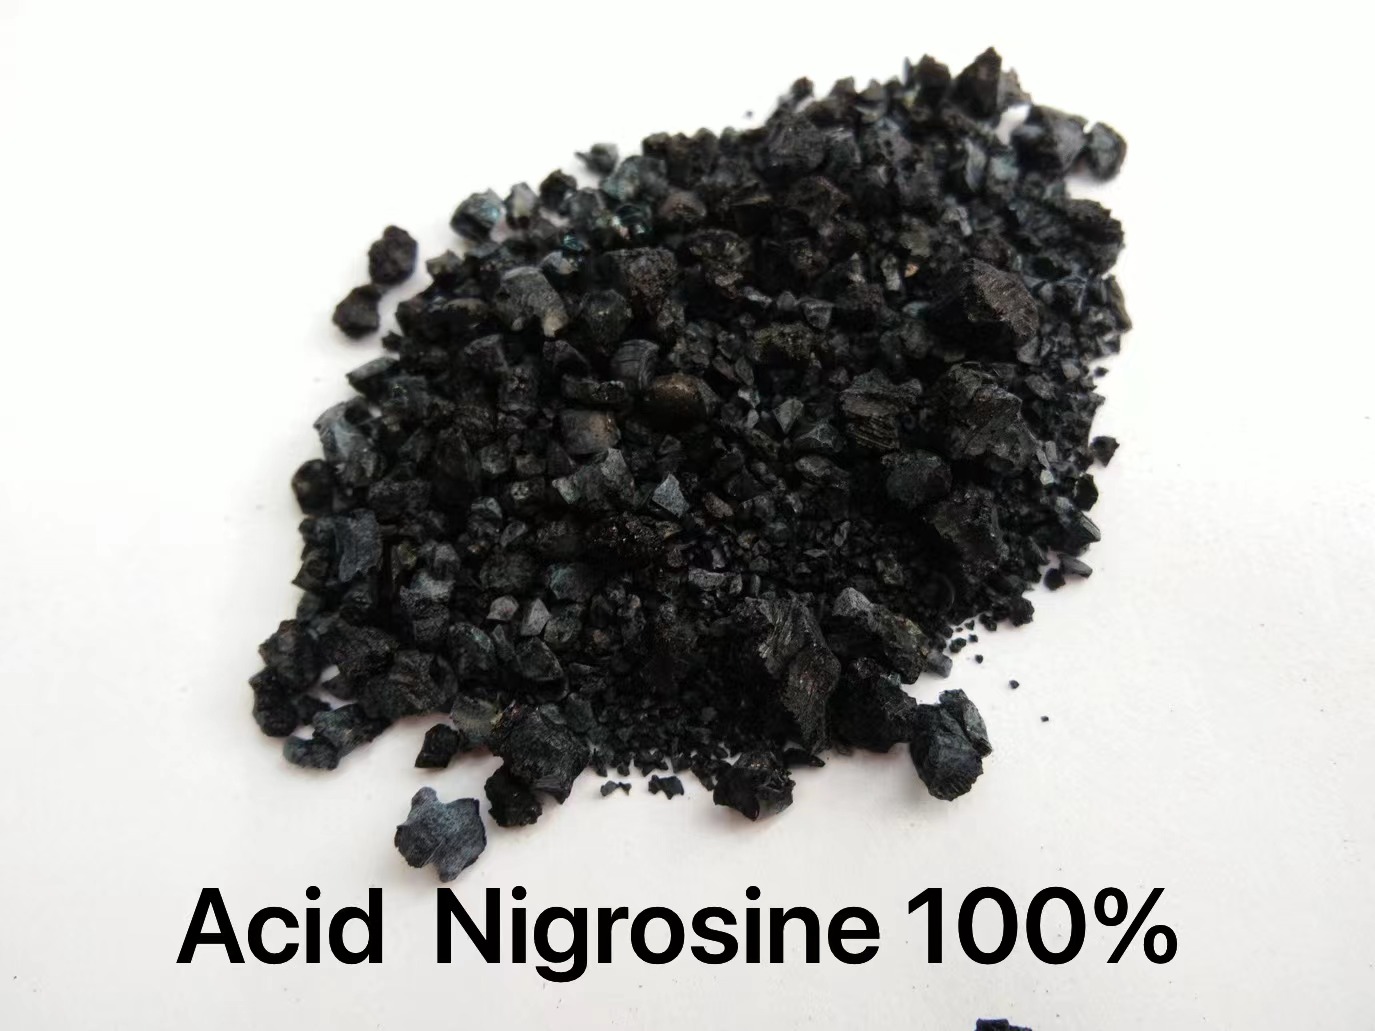 Nigrosine acid